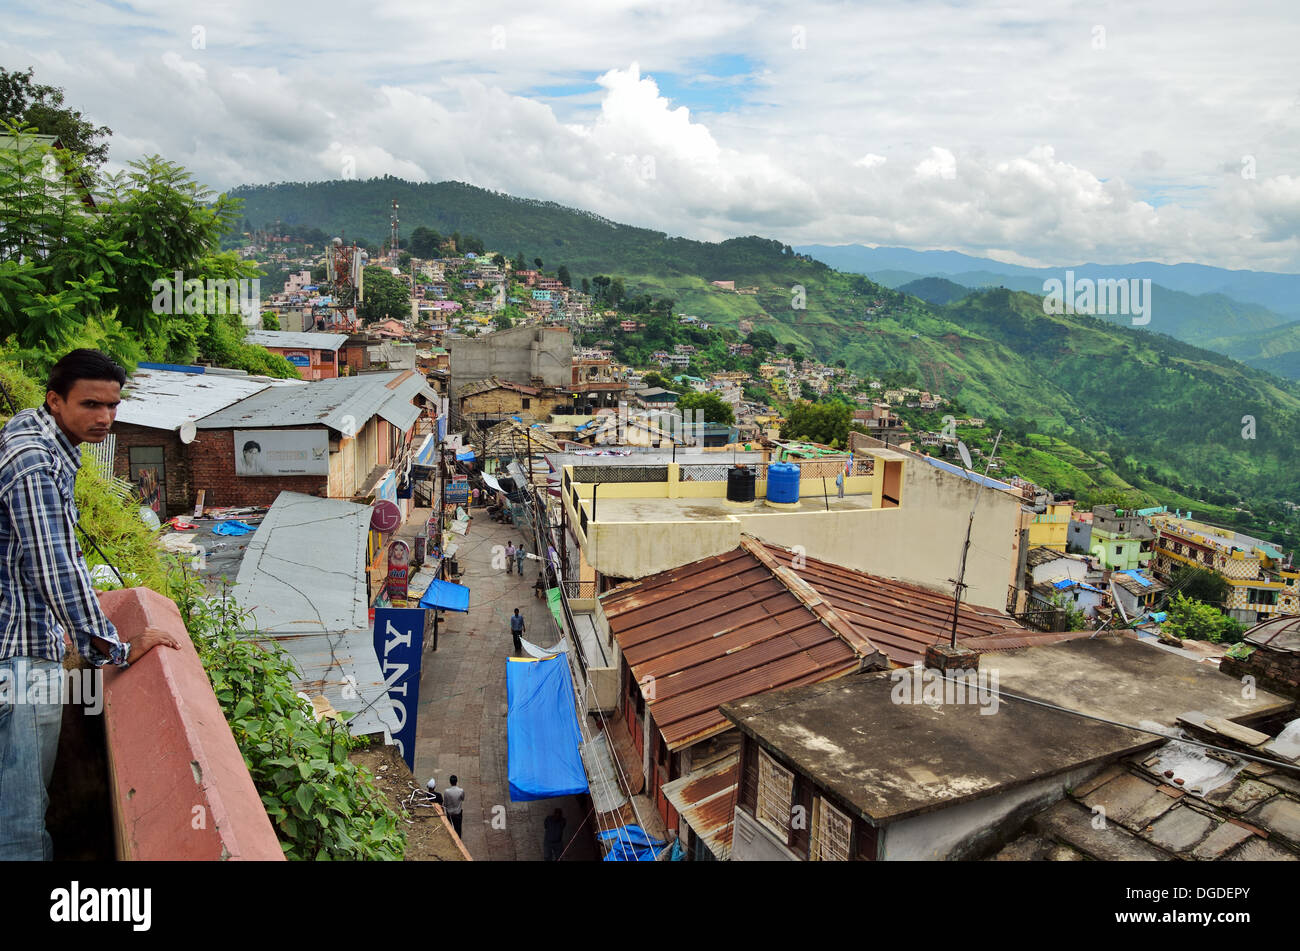 Indian mountain village of Almora, India Stock Photo